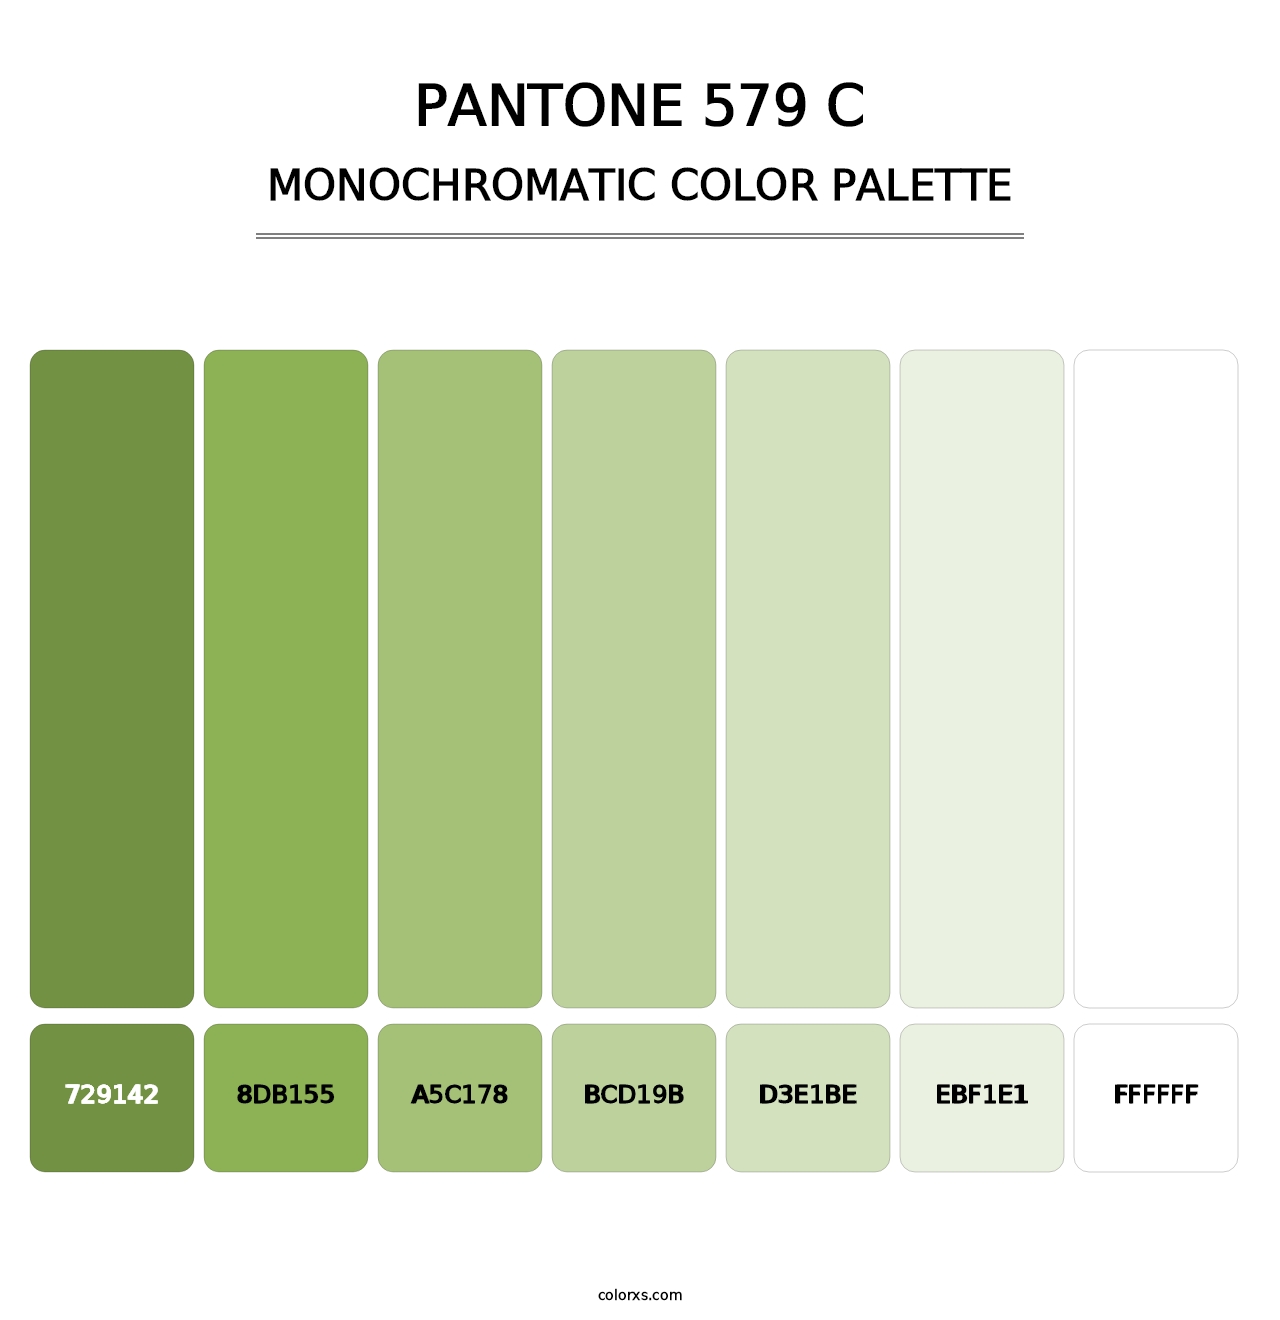 PANTONE 579 C - Monochromatic Color Palette